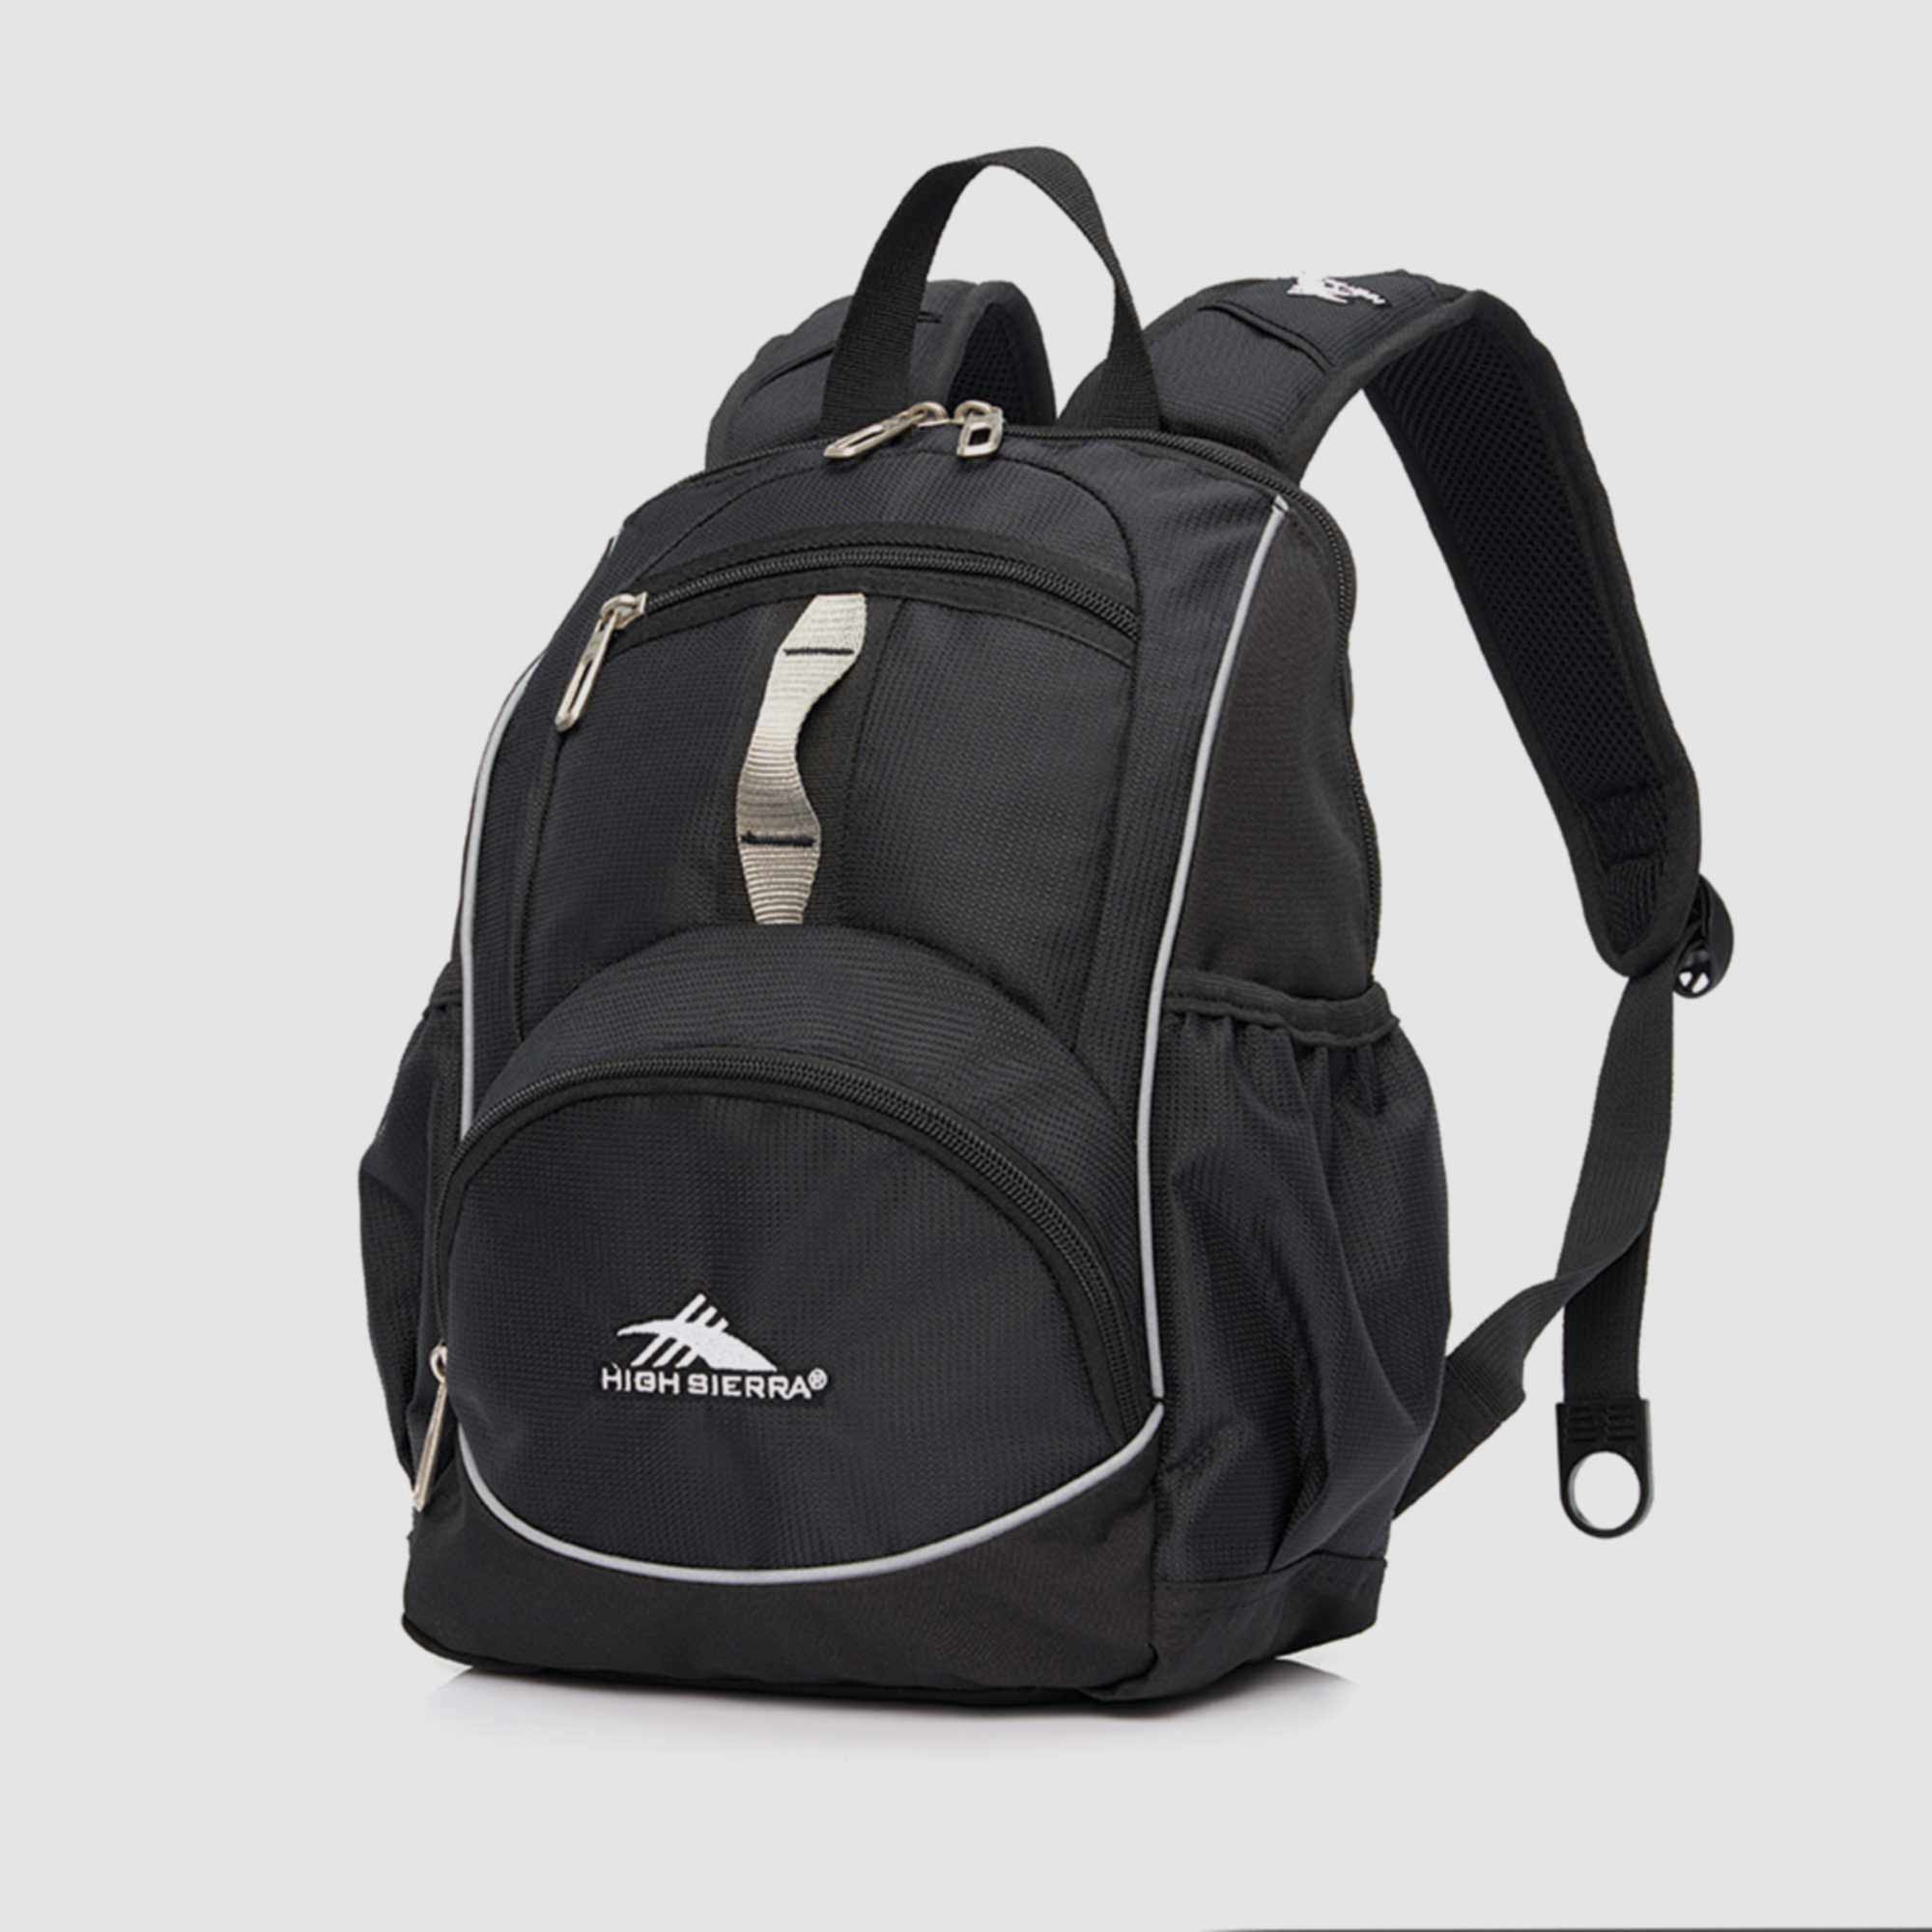 High Sierra Mini 2.0 Backpack Black/Silver 35cm